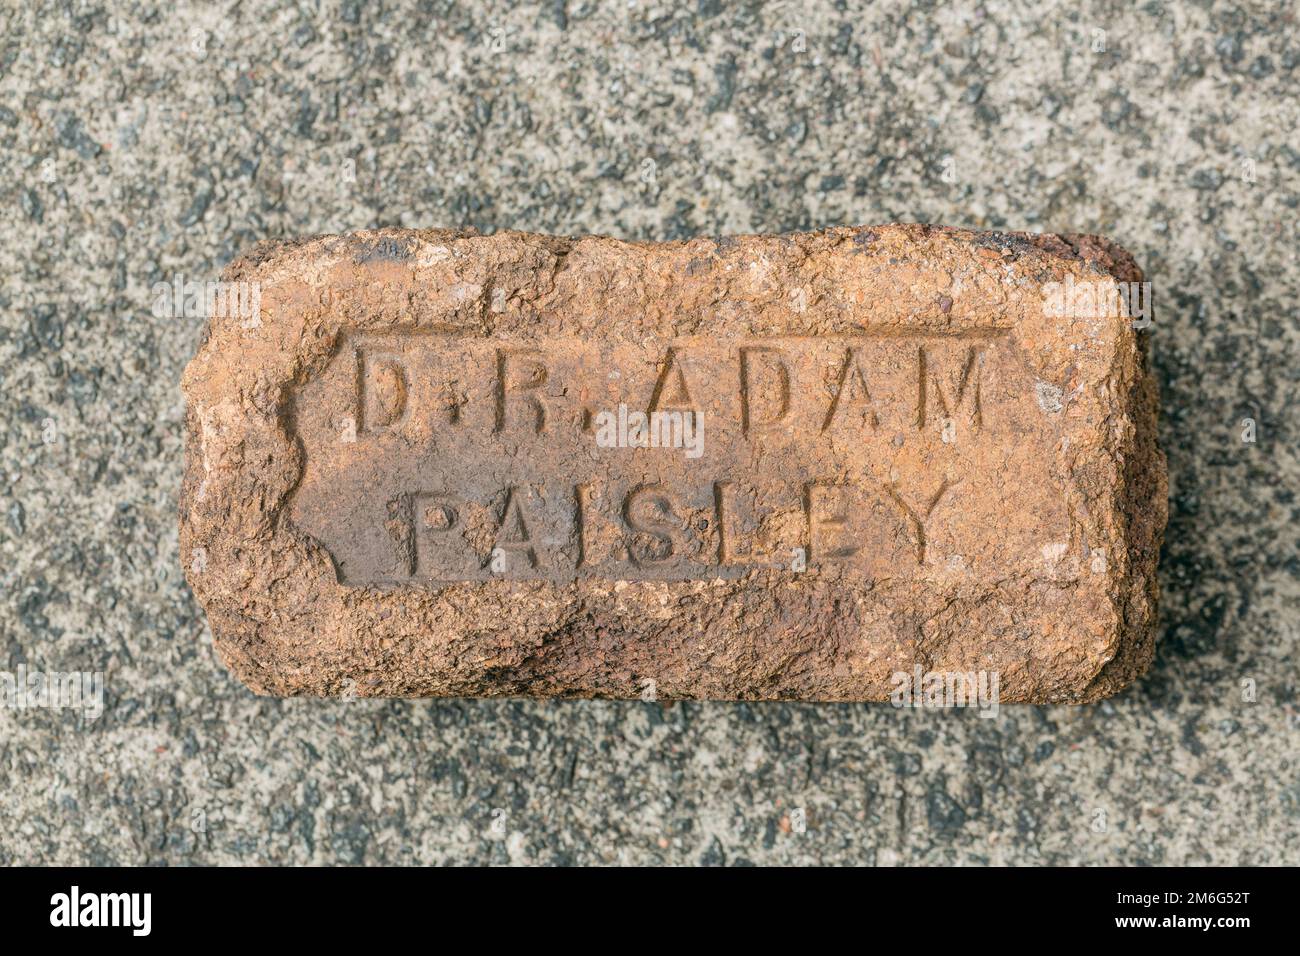 Un vecchio mattone usurato recante il nome del produttore, D R Adam, Paisley, Scotland, UK, Europa Foto Stock